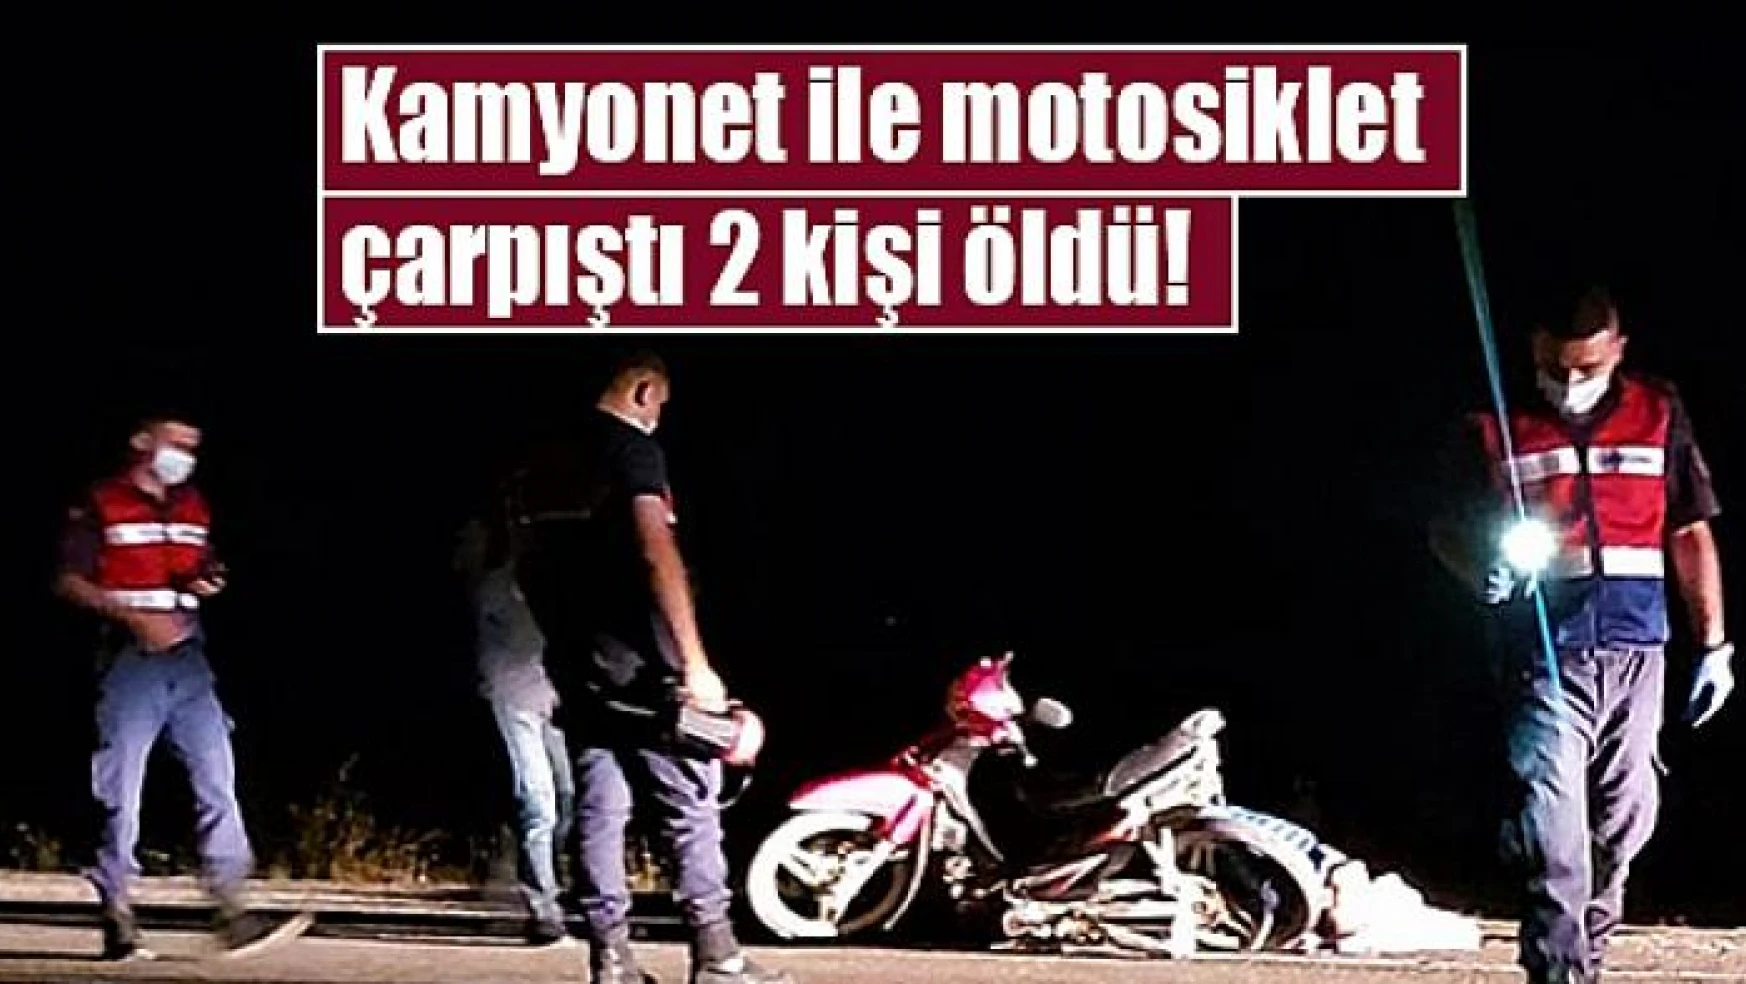 Kamyonet ile motosiklet çarpıştı 2 kişi öldü